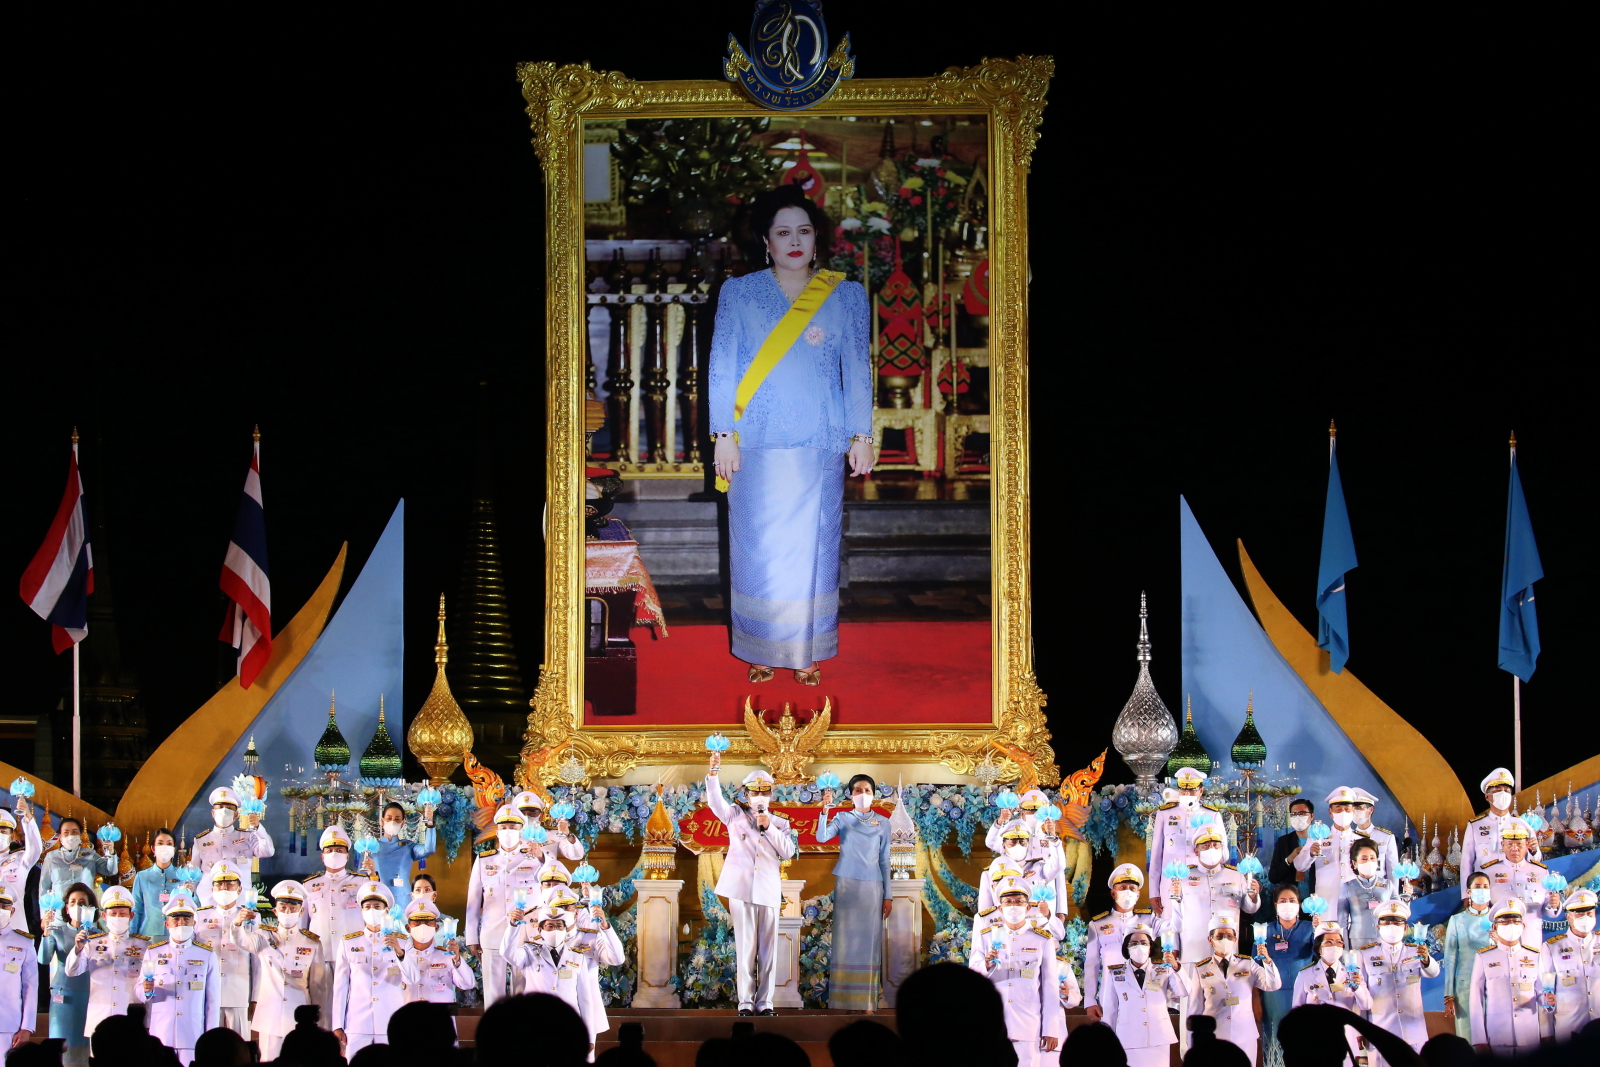 Tajlandia - 88. Rocznica urodzin królowej Sirikit, EPA/DIEGO AZUBEL 
